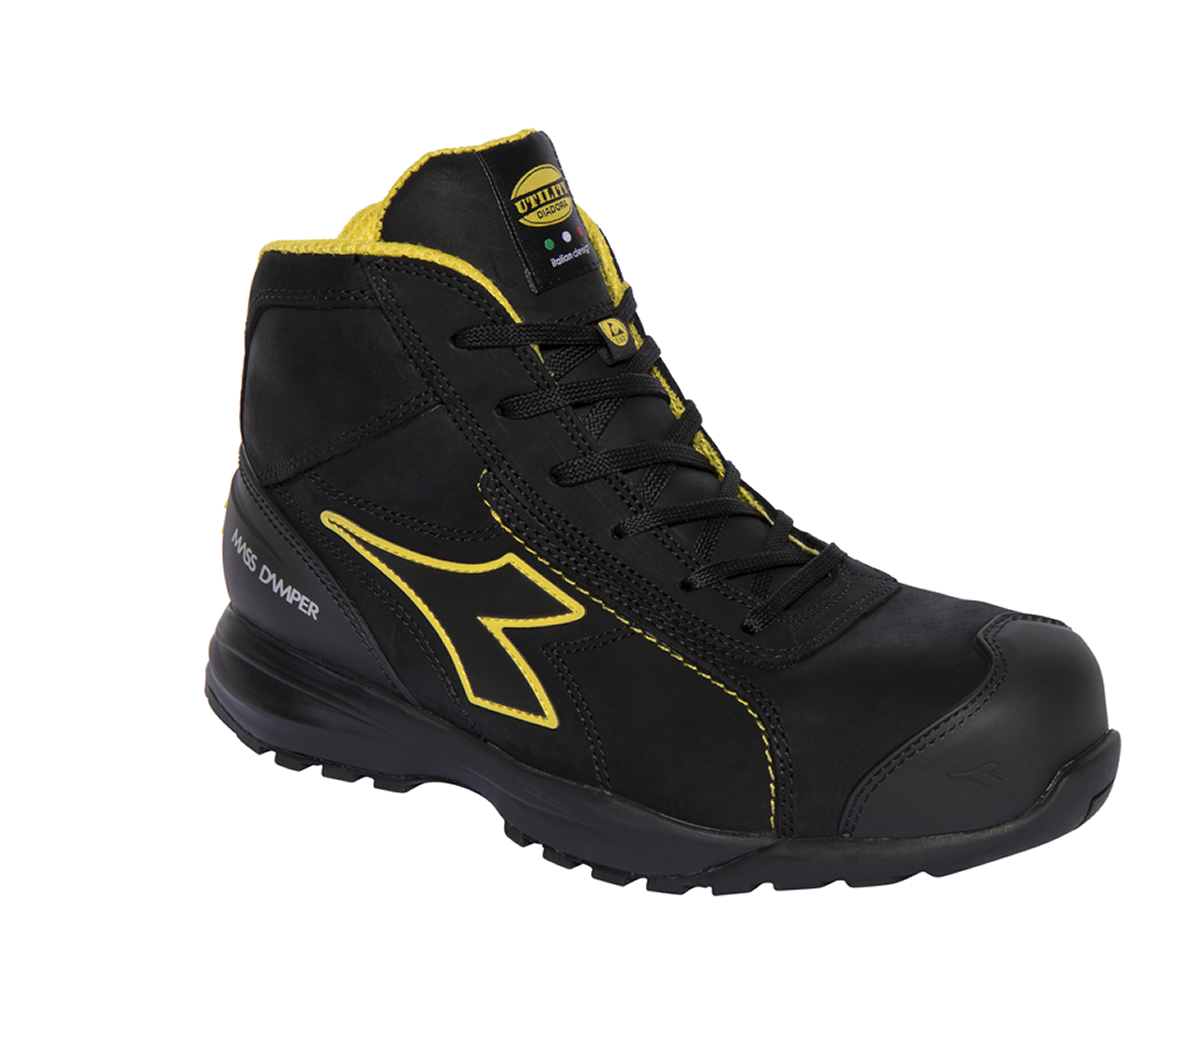 Chaussure sécurité Glove noire jaune T39 Diadora Utility 170235-80013/39